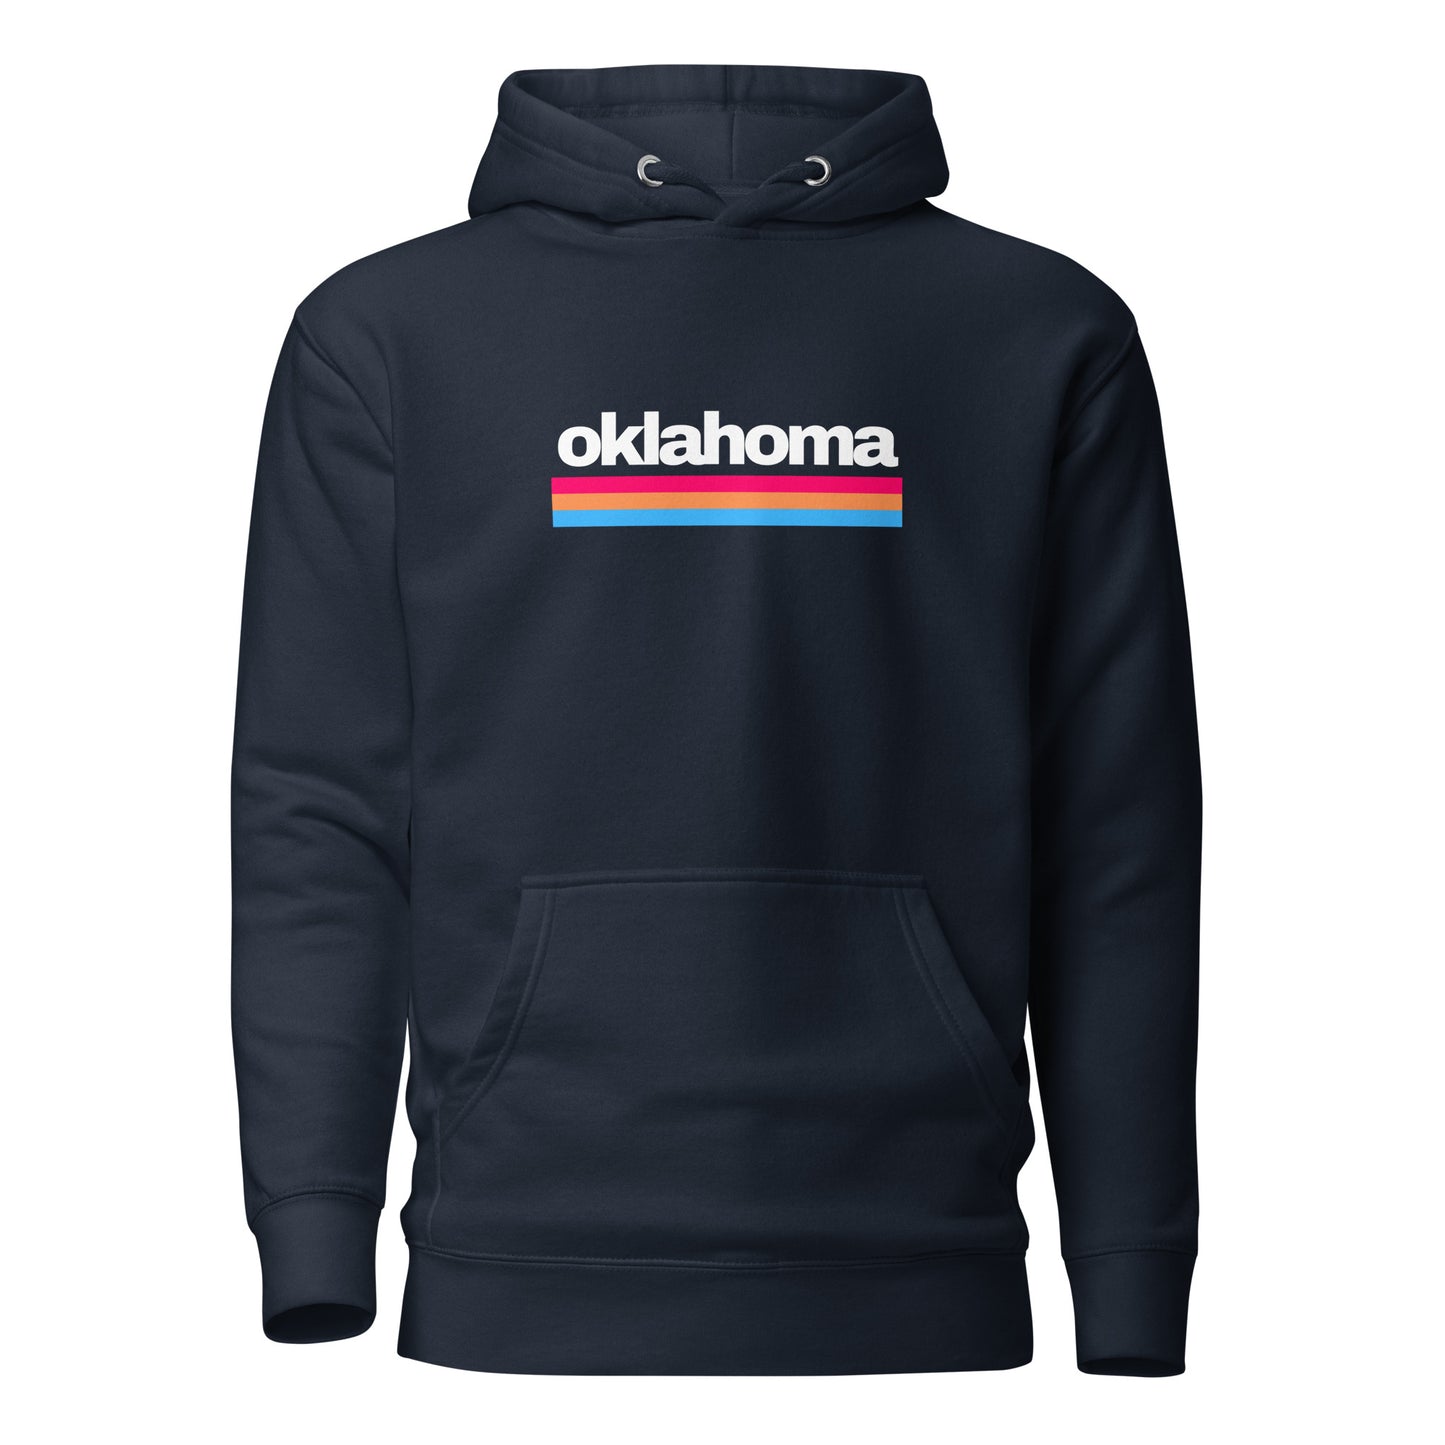 Oklahoma - Unisex Hoodie